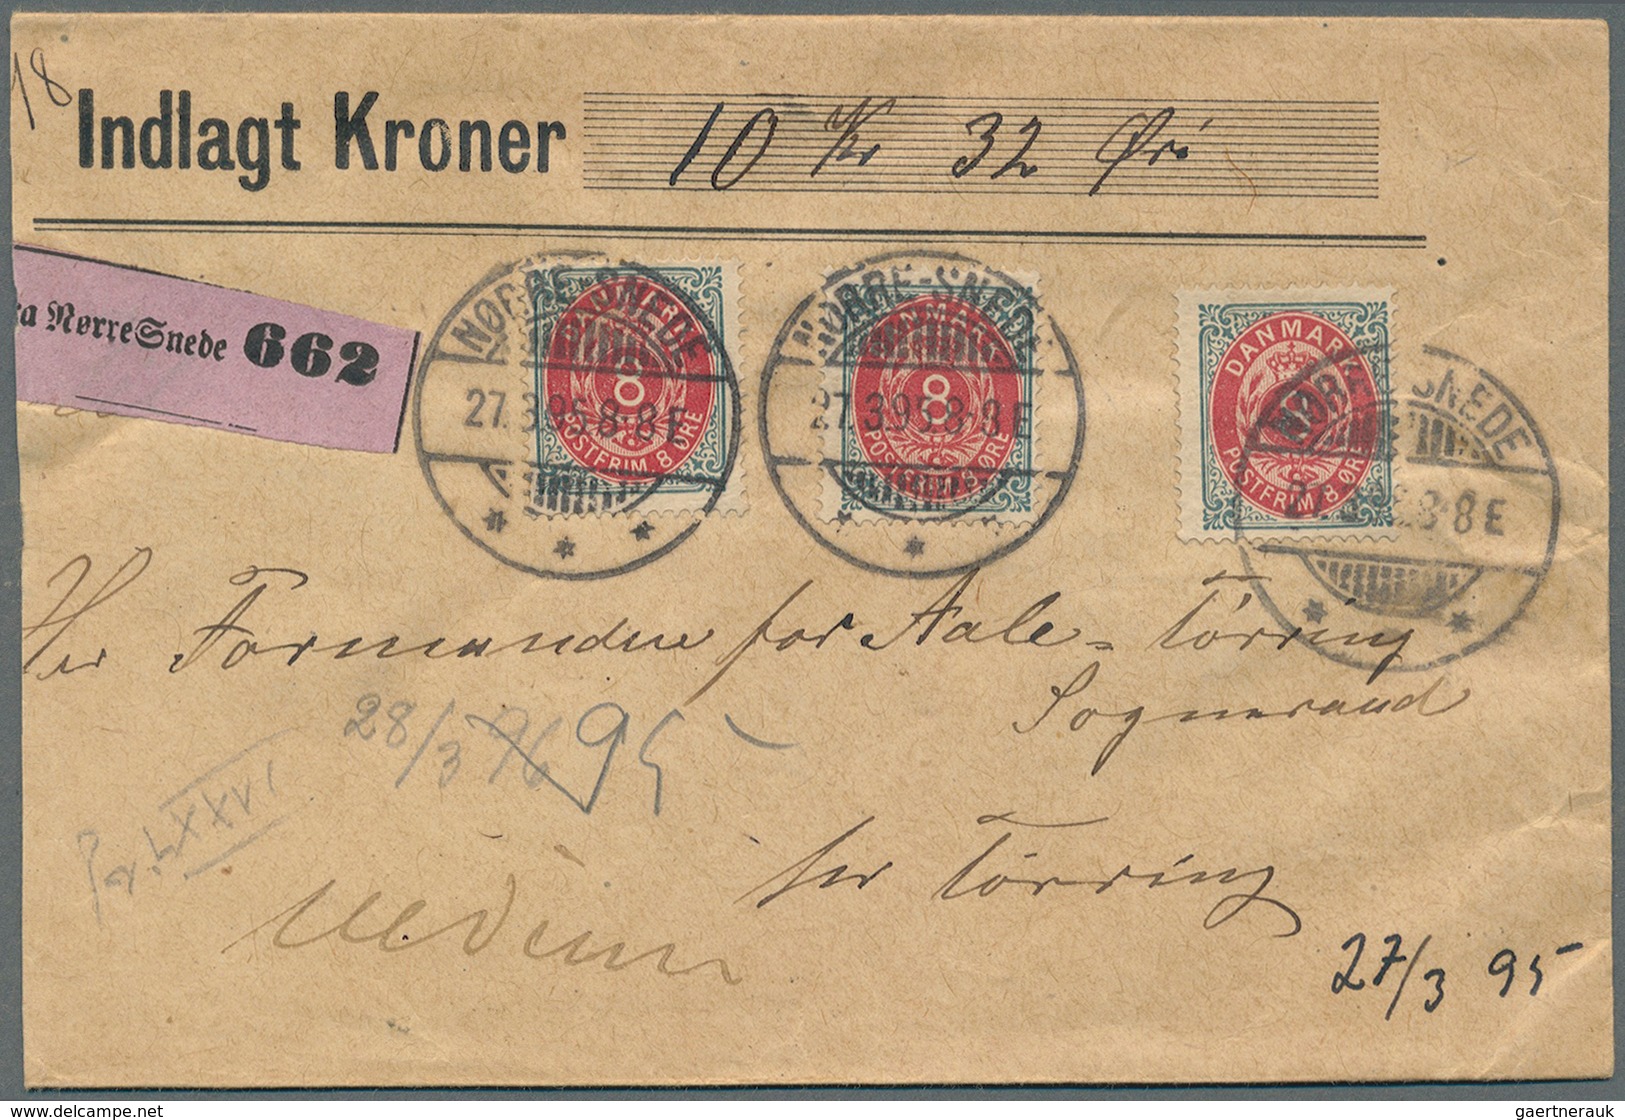 26229 Dänemark: 1866-1945 (meist), interresanter Posten von über 250 Belegen mit besseren Stempeln, sowie